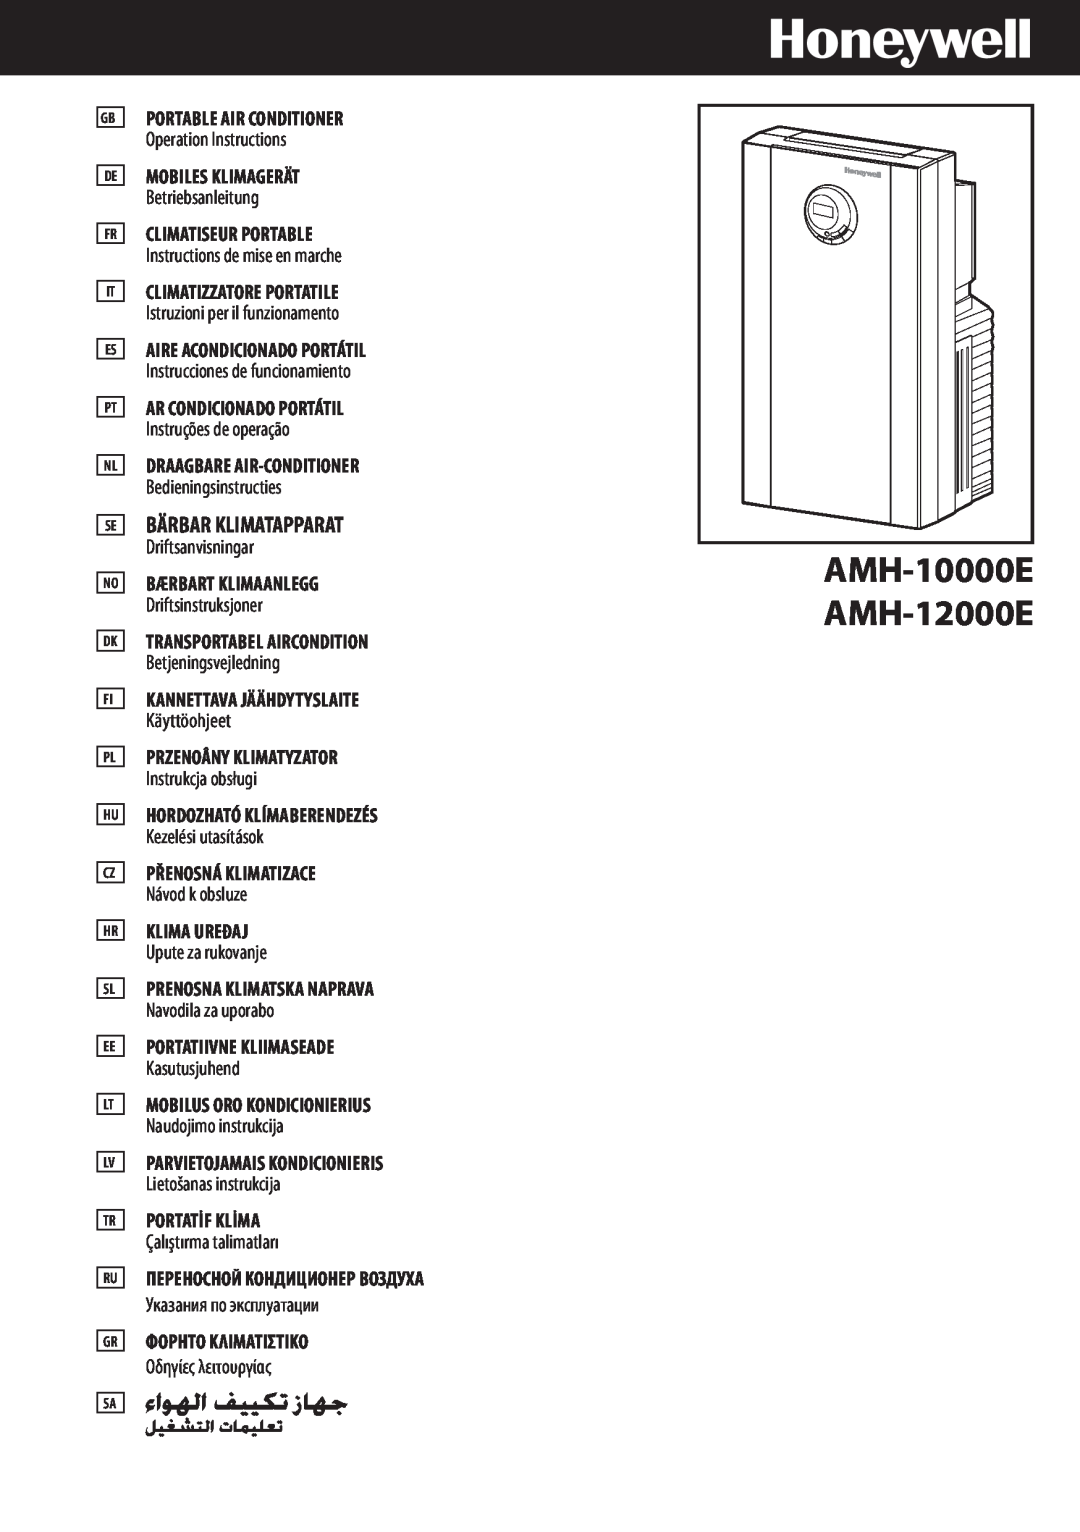 Honeywell manual AMH-10000E AMH-12000E, Portable Air Conditioner, Mobiles Klimagerät, Climatiseur Portable 